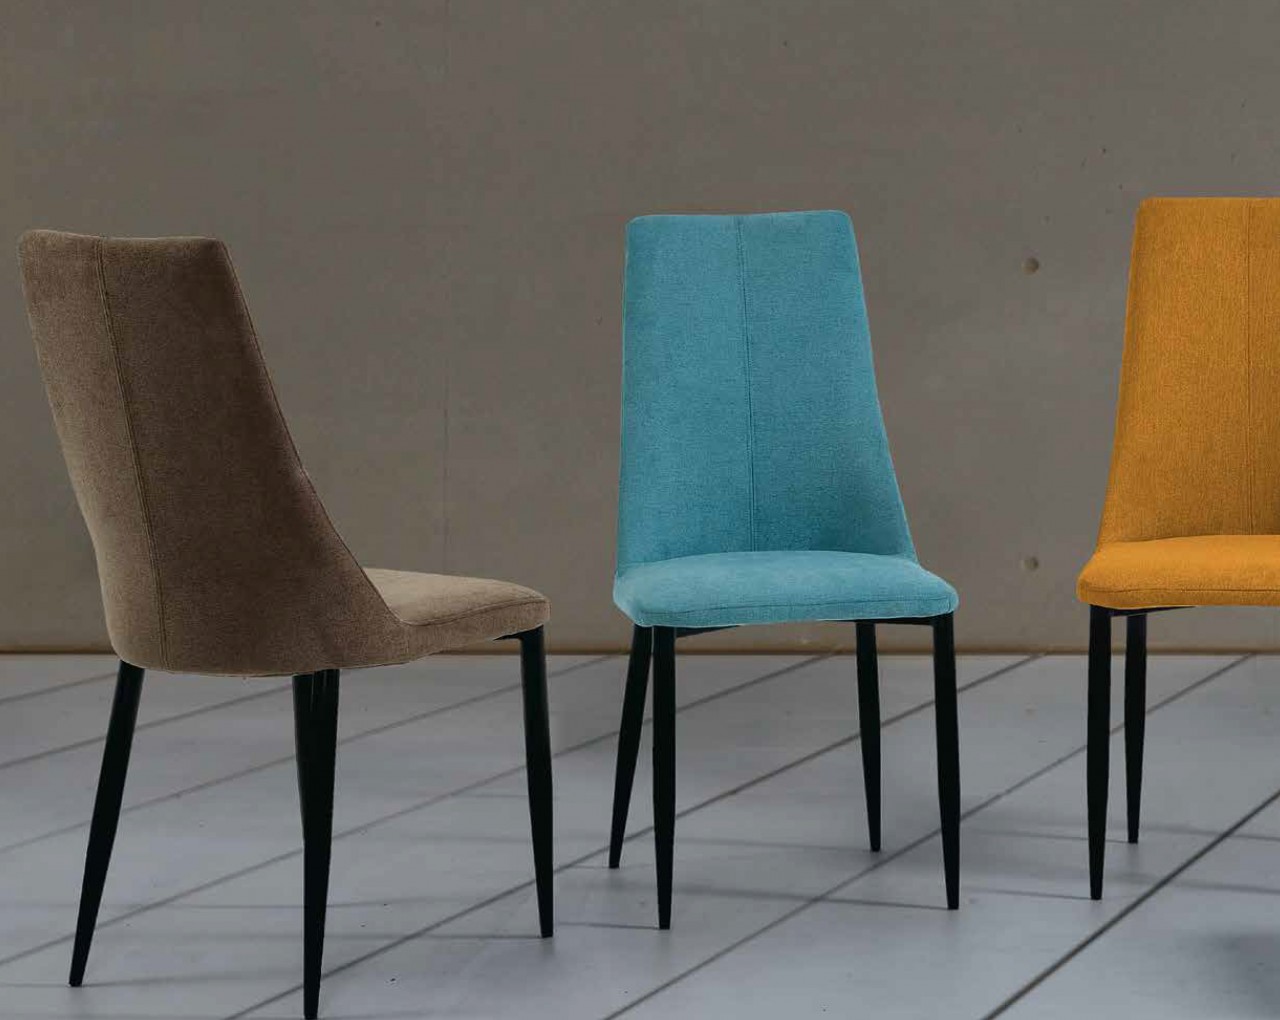 A cadeira Leti é a escolha certa para dar um toque moderno à sua cozinha seu design minimalista e sofisticado é ideal para criar um espaço aconchegante e elegante!